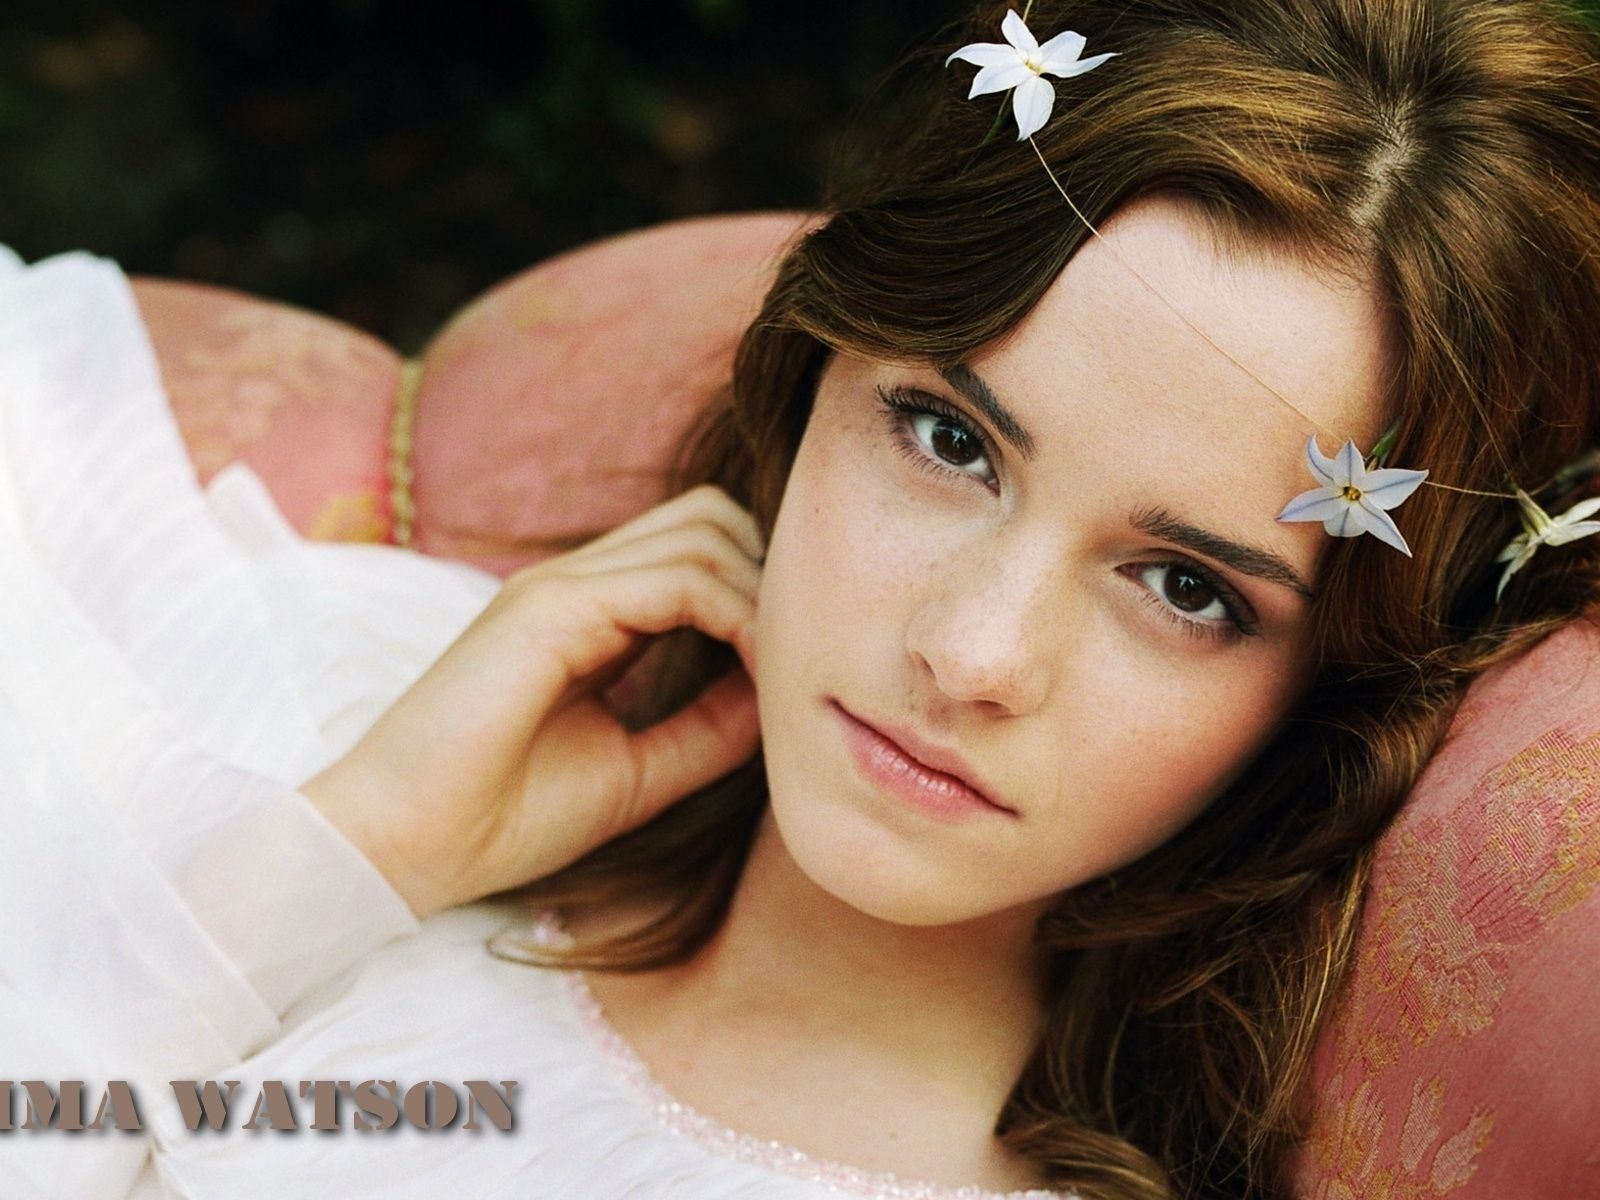 Emma Watson 艾玛·沃特森 美女壁纸27 - 1600x1200